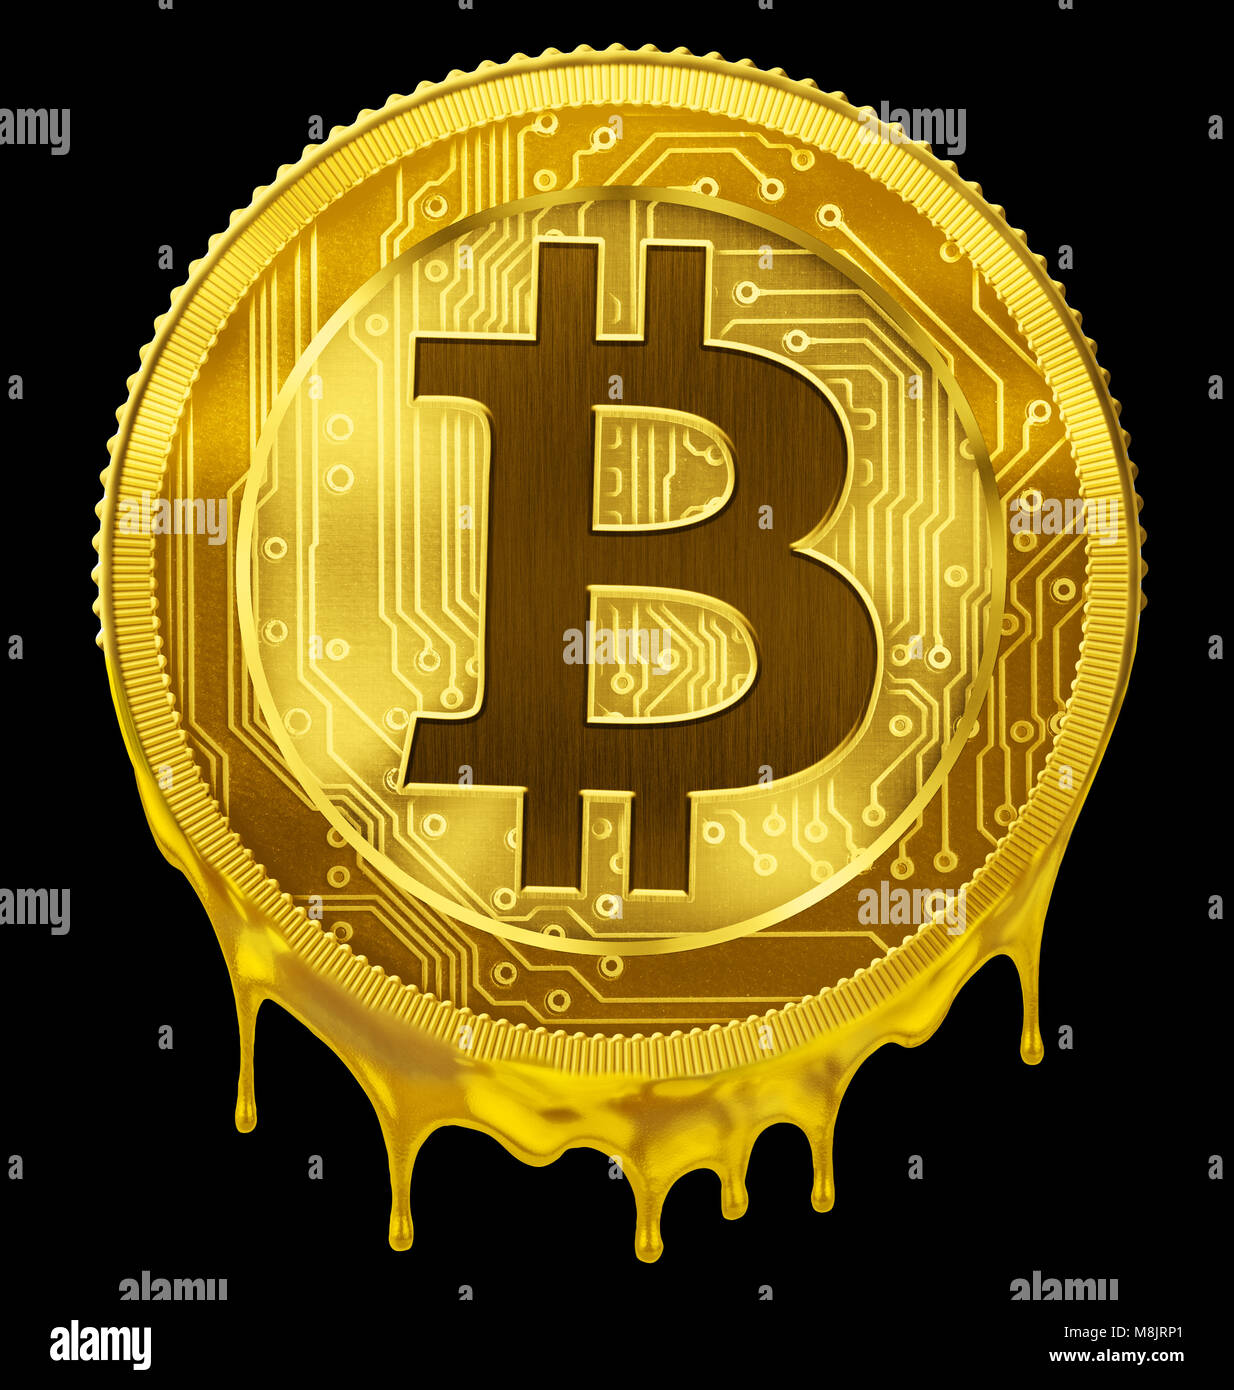 Bitcoin fuso o BTC concetto guasto 3d illustrazione Foto Stock